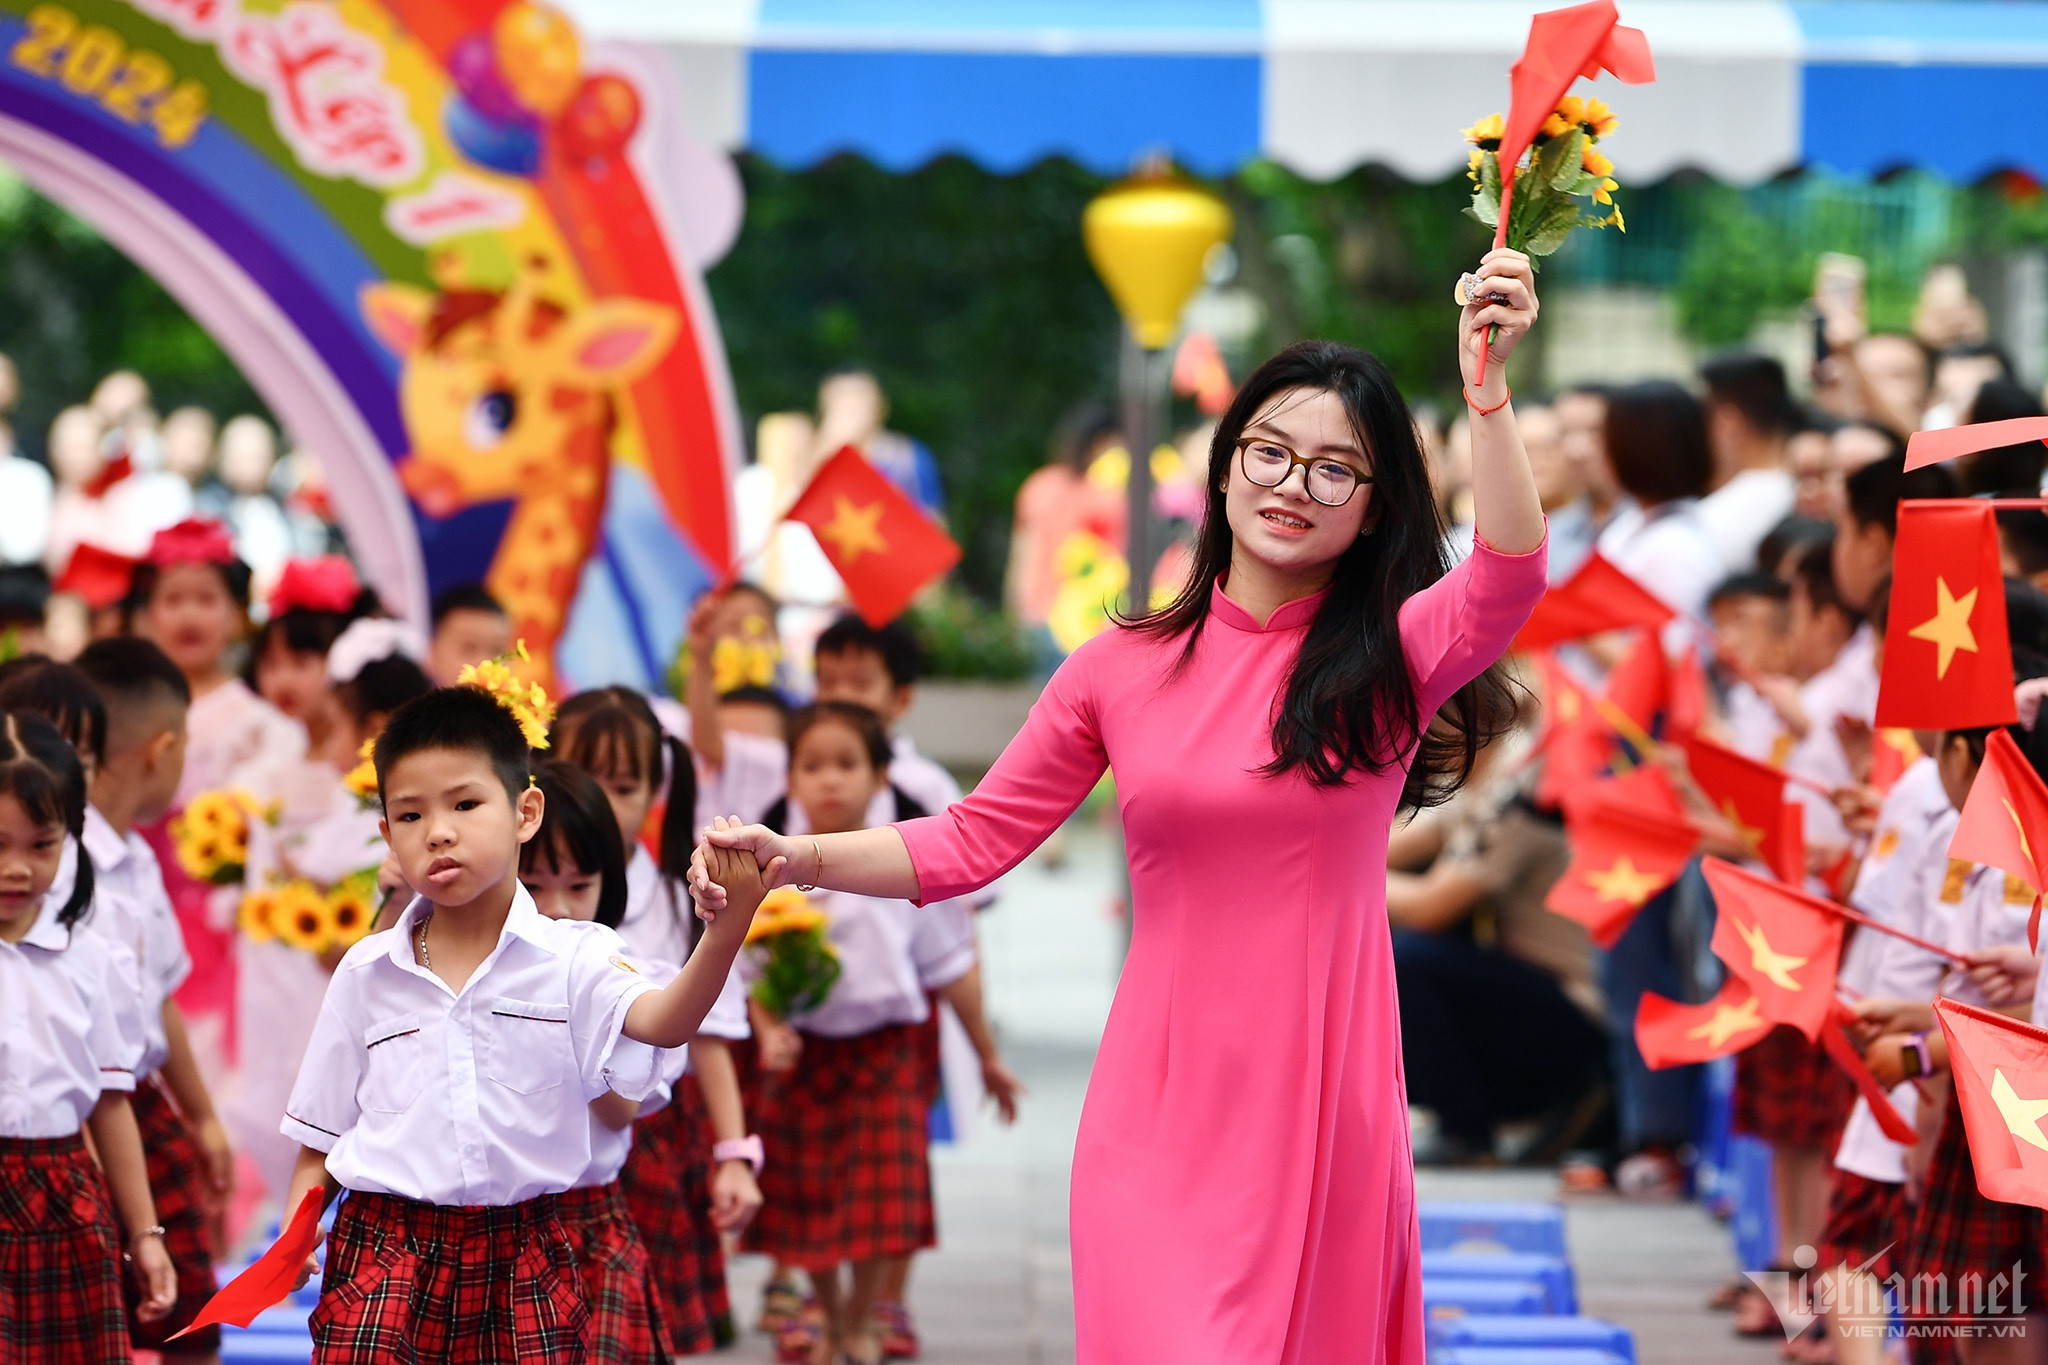 Vì sao 20/11 được lựa chọn là Ngày Nhà giáo Việt Nam?